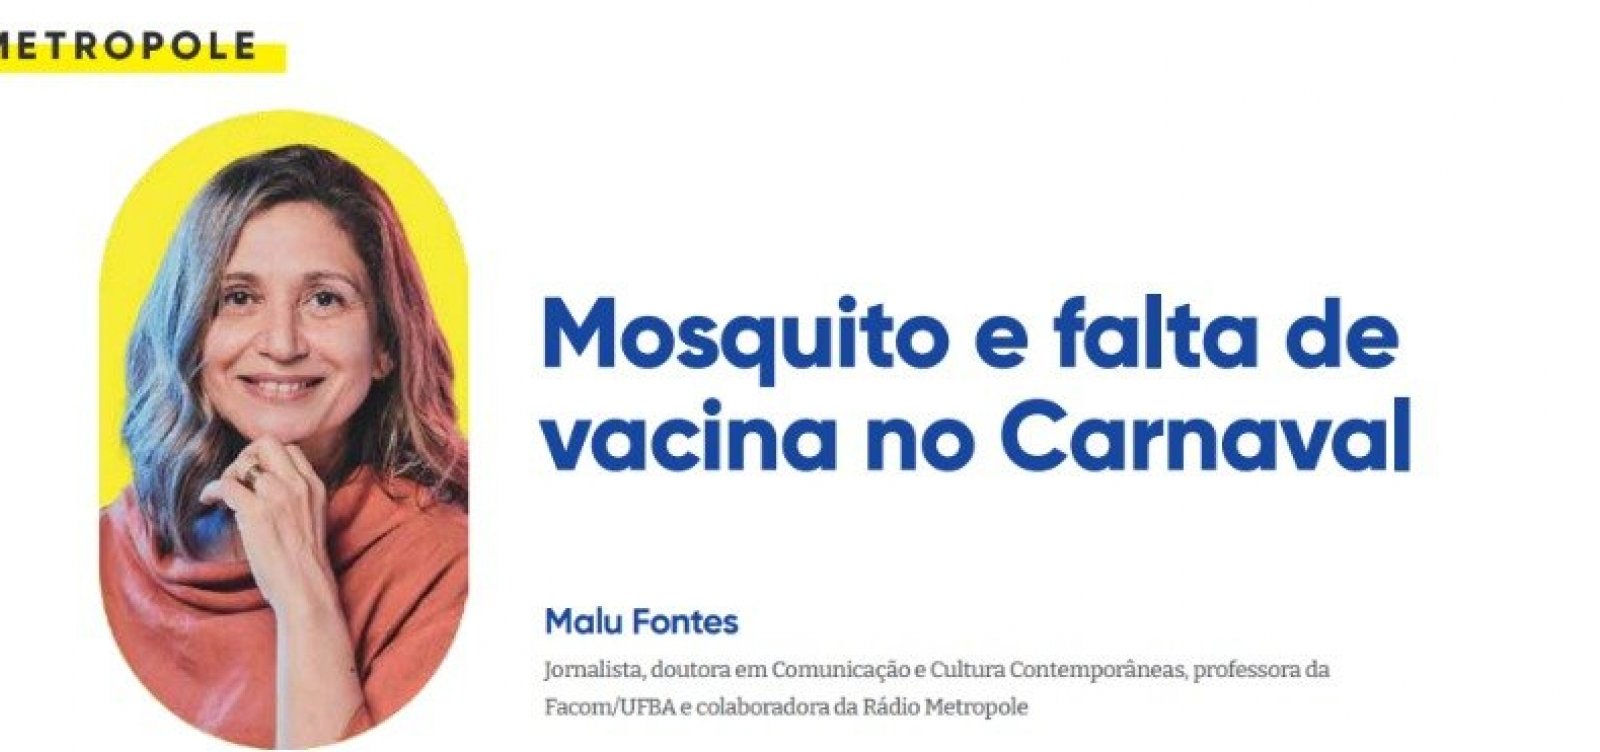 Mosquito e falta de vacina no Carnaval